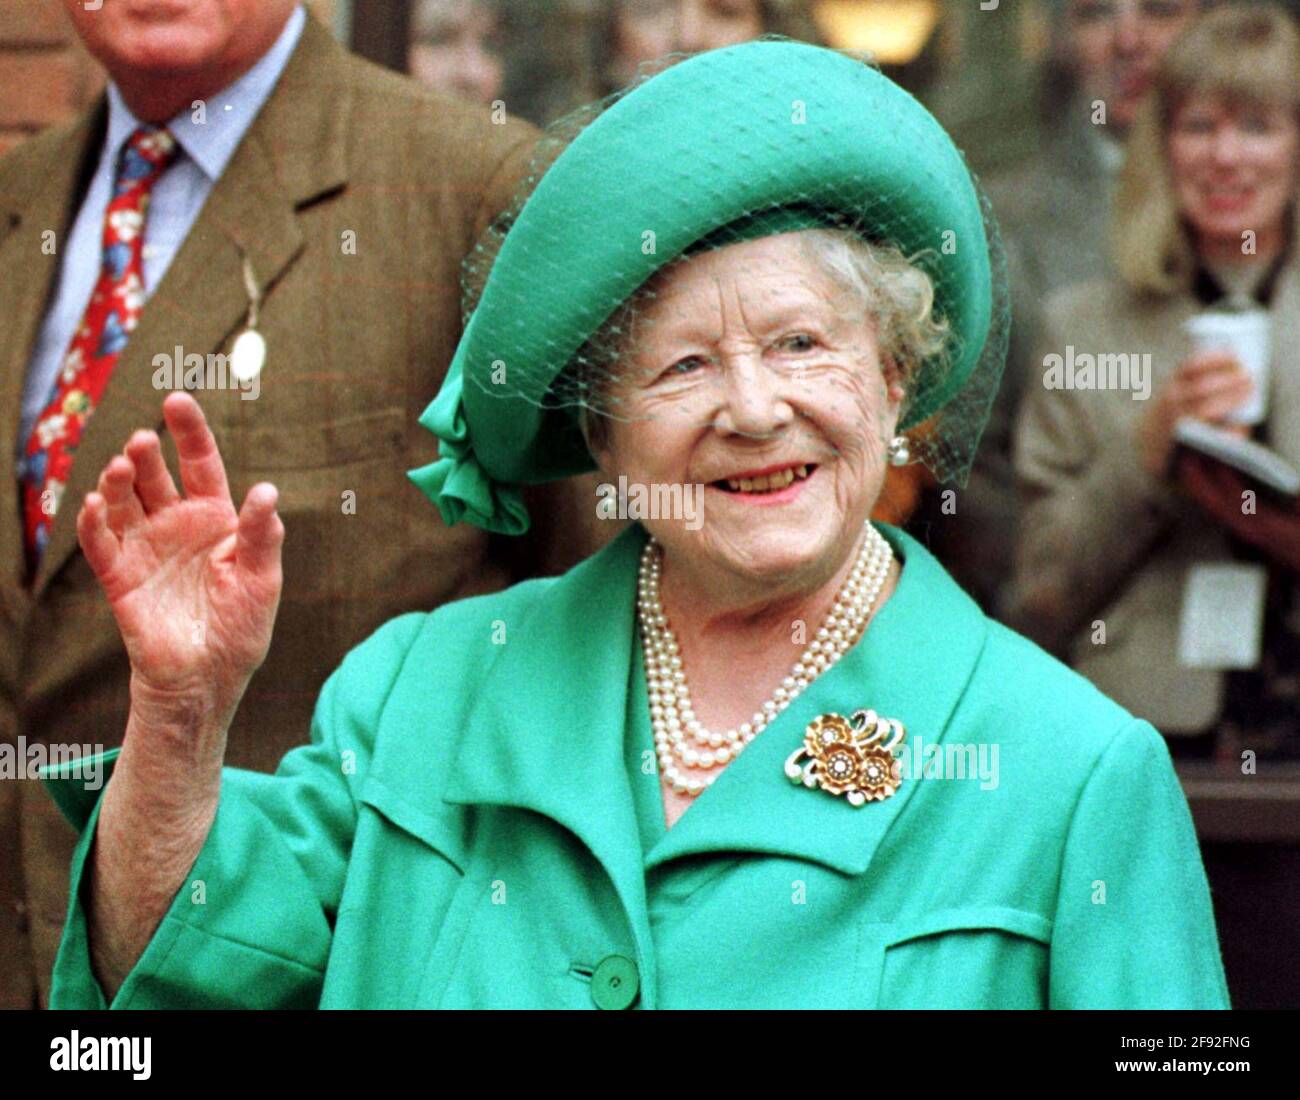 Foto de archivo del 12/3/1997 de la Reina Madre. El funeral de la madre Reina fue el último funeral real que se televisó ampliamente en el Reino Unido. Fecha de emisión: Viernes 16 de abril de 2021. Foto de stock